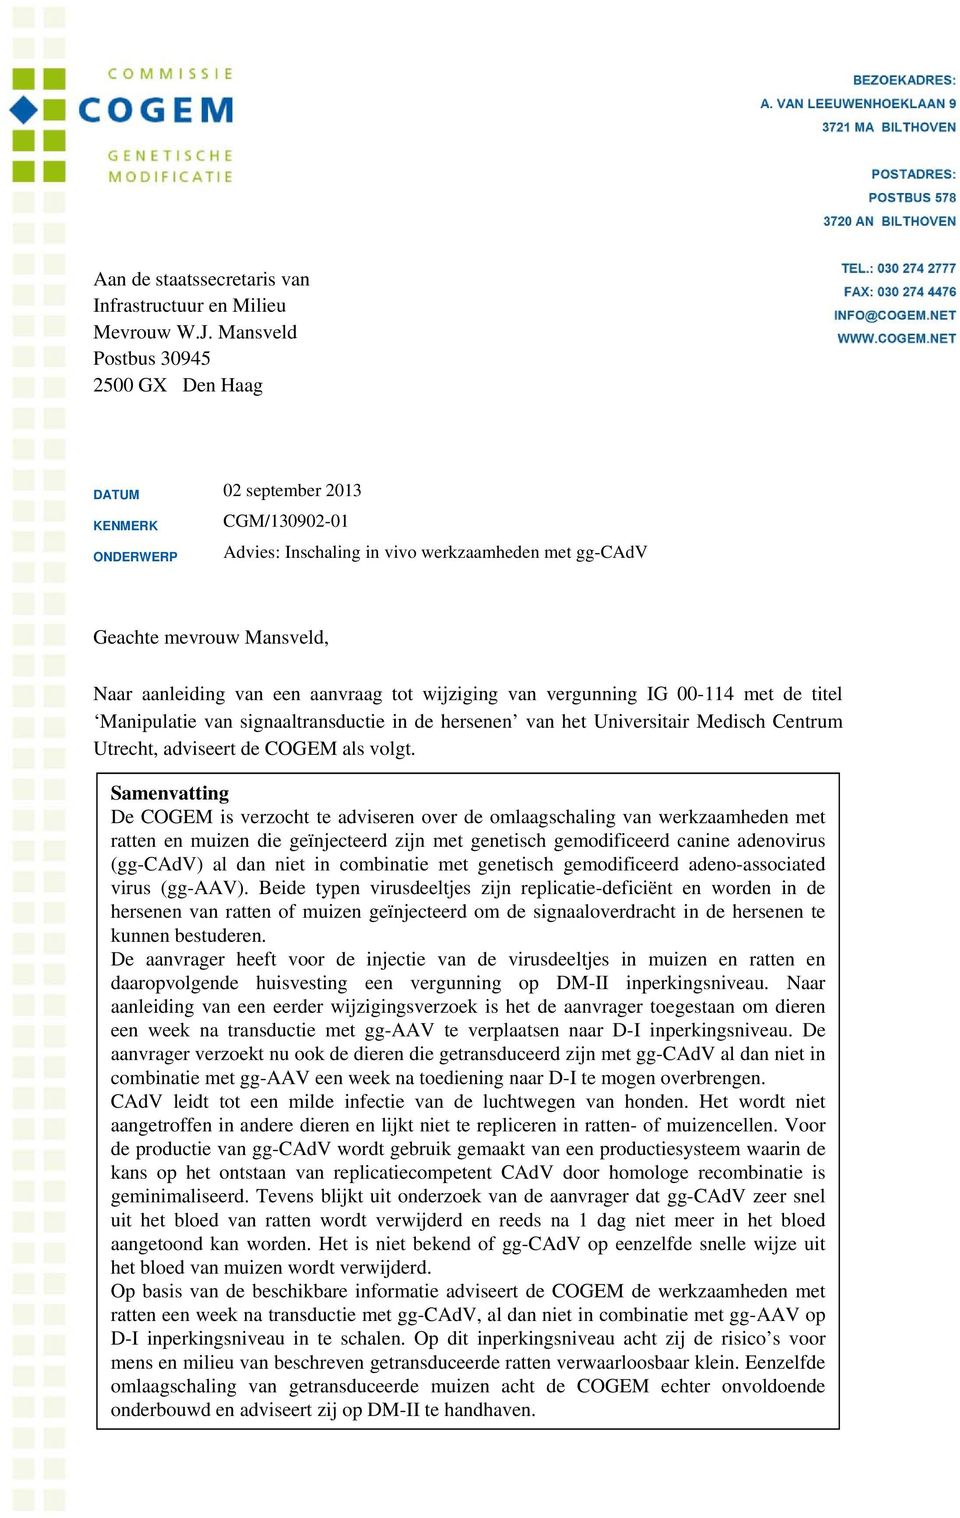 aanvraag tot wijziging van vergunning IG 00-114 met de titel Manipulatie van signaaltransductie in de hersenen van het Universitair Medisch Centrum Utrecht, adviseert de COGEM als volgt.